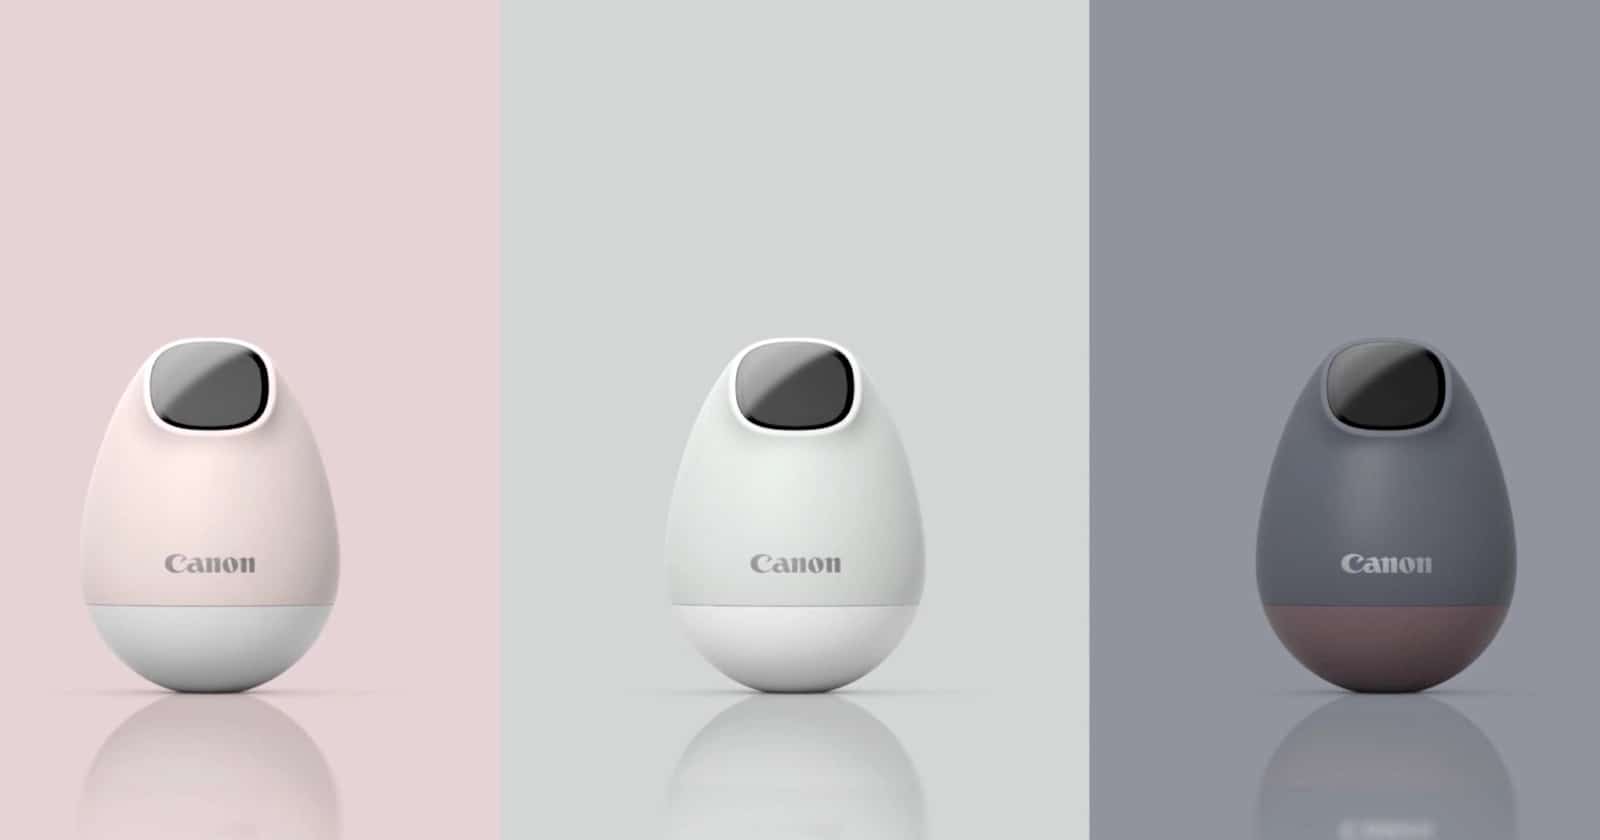 Concept máy ảnh, máy quay ‘Posture Fit’ từ Canon sẽ dành cho nhân viên văn phòng